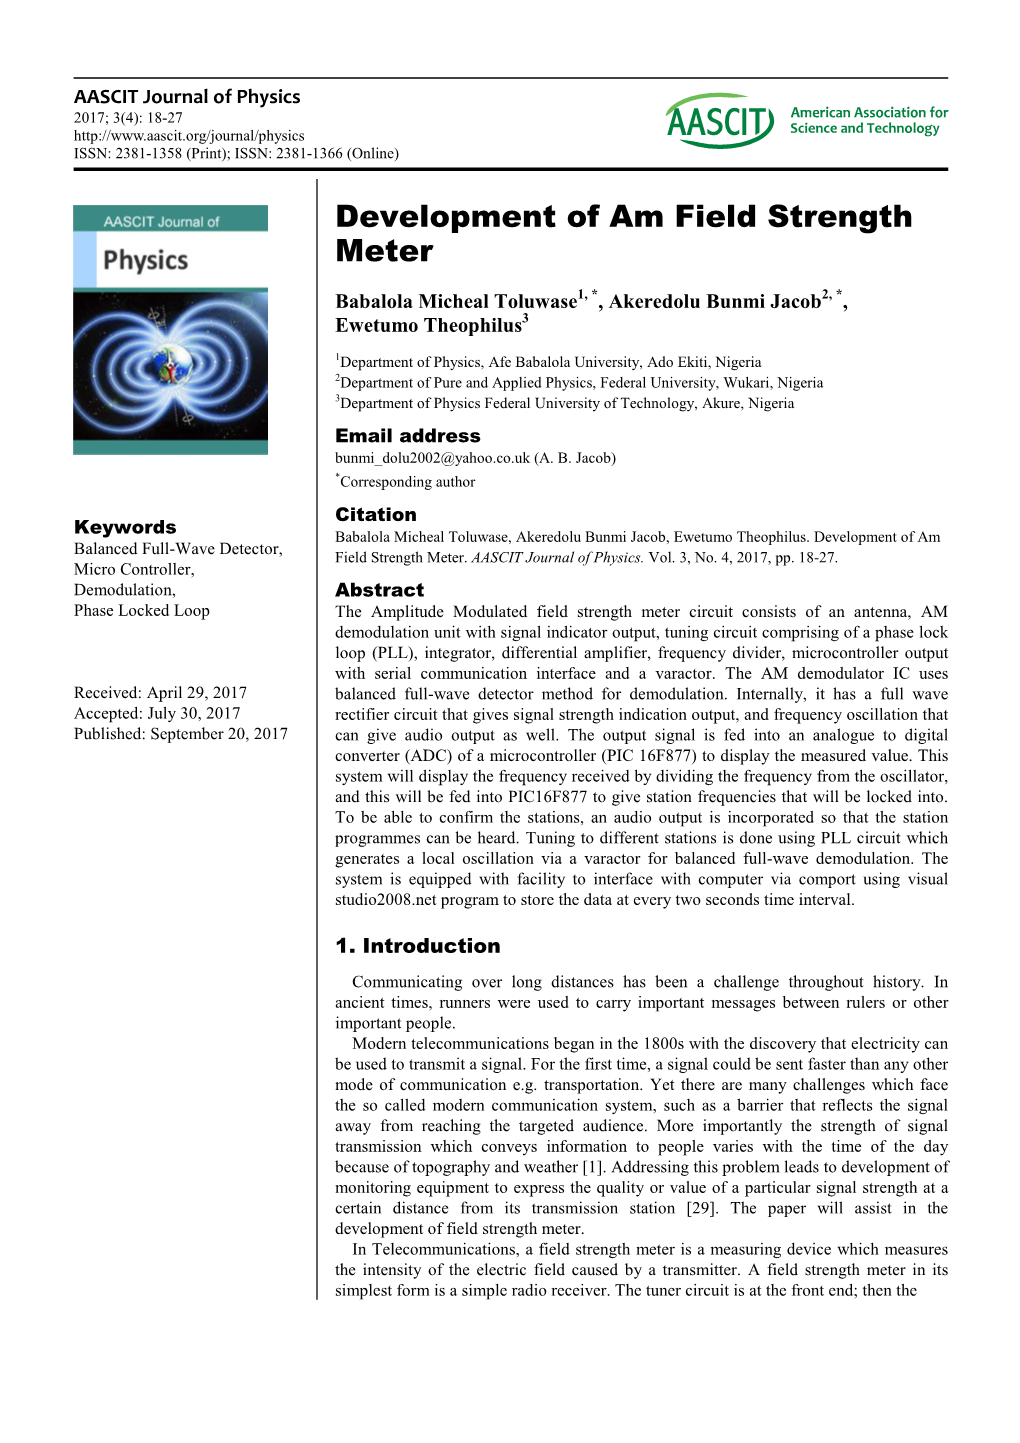 Development of Am Field Strength Meter